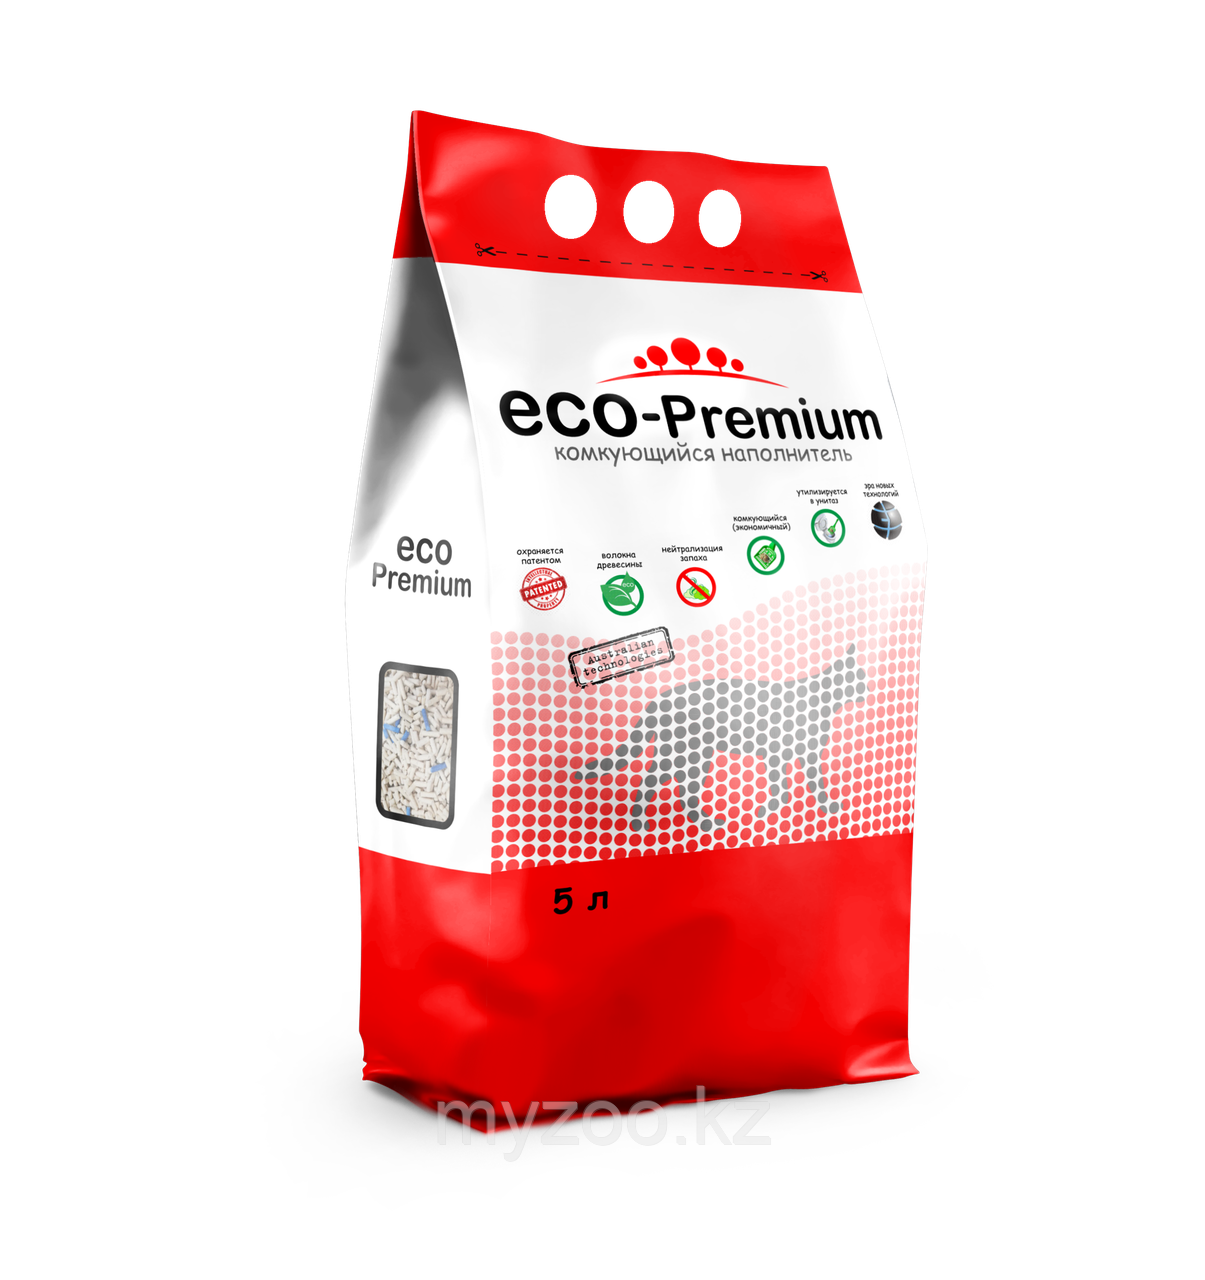 ECO-Premium Тутти-фрути, 5 л |Эко-премиум Наполнитель комкующийся древесный|